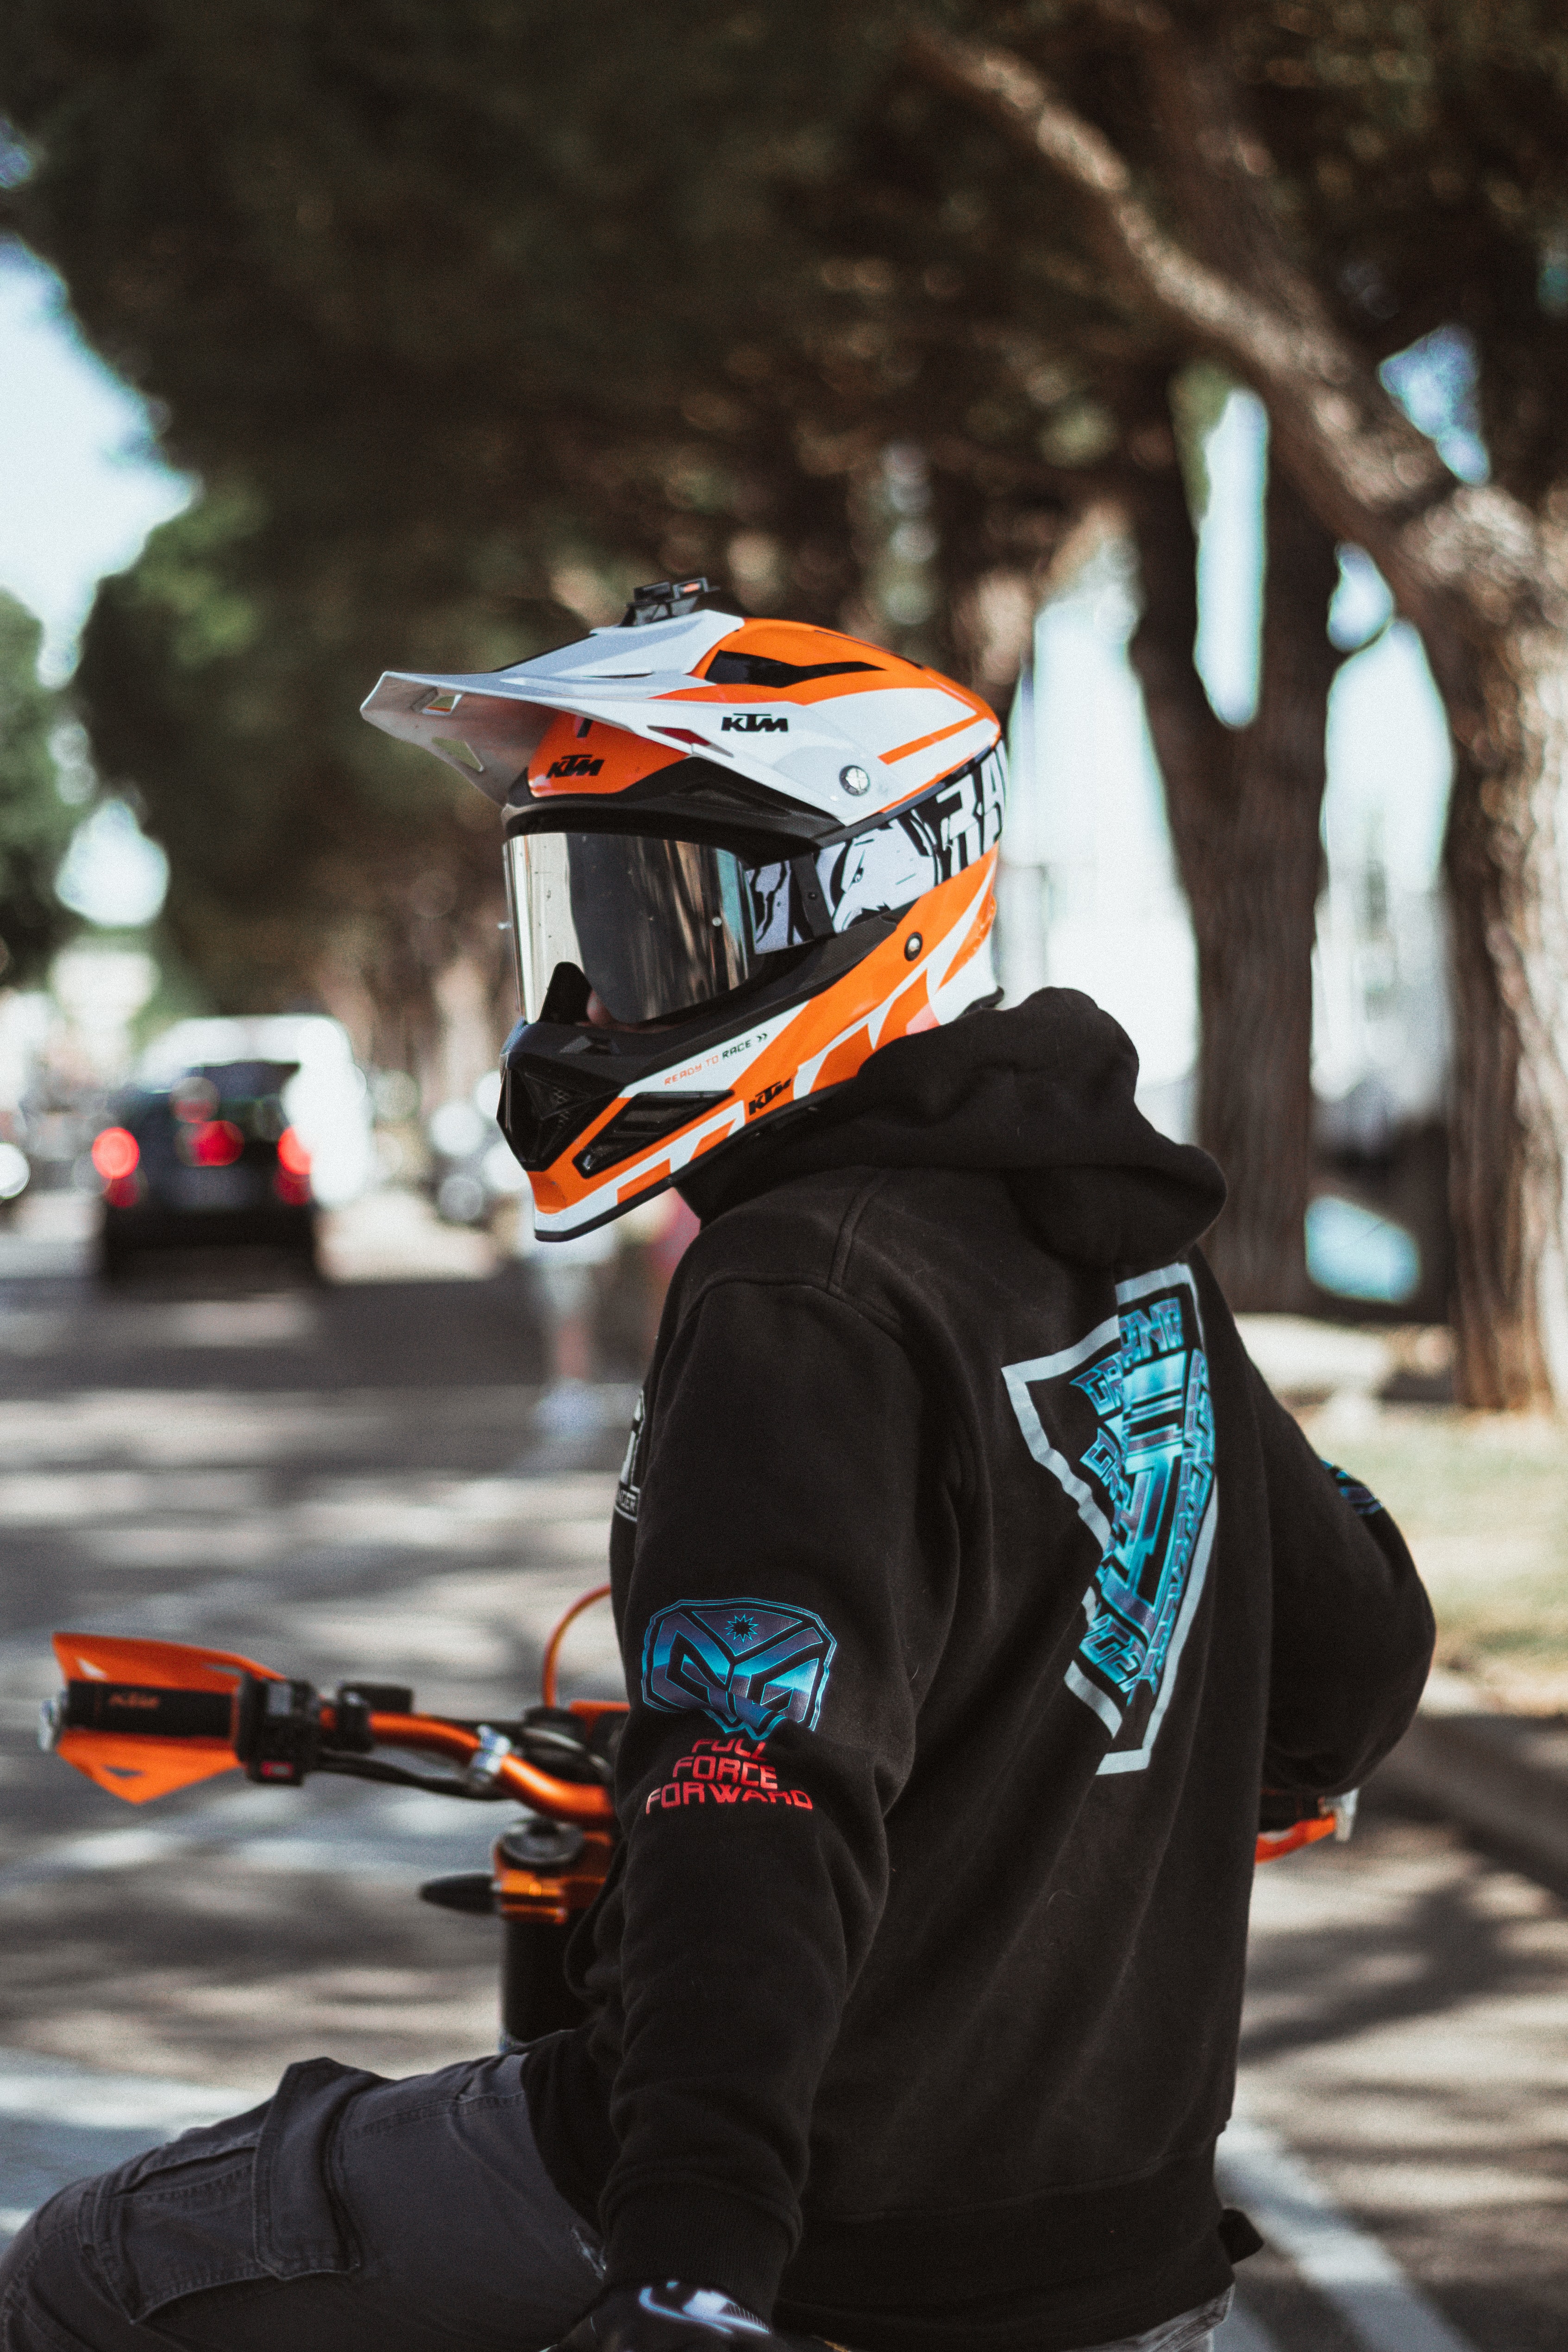 hoodies, motorcyclist, helmet, minimalism, motorcycle, hoodie, equipment, outfit